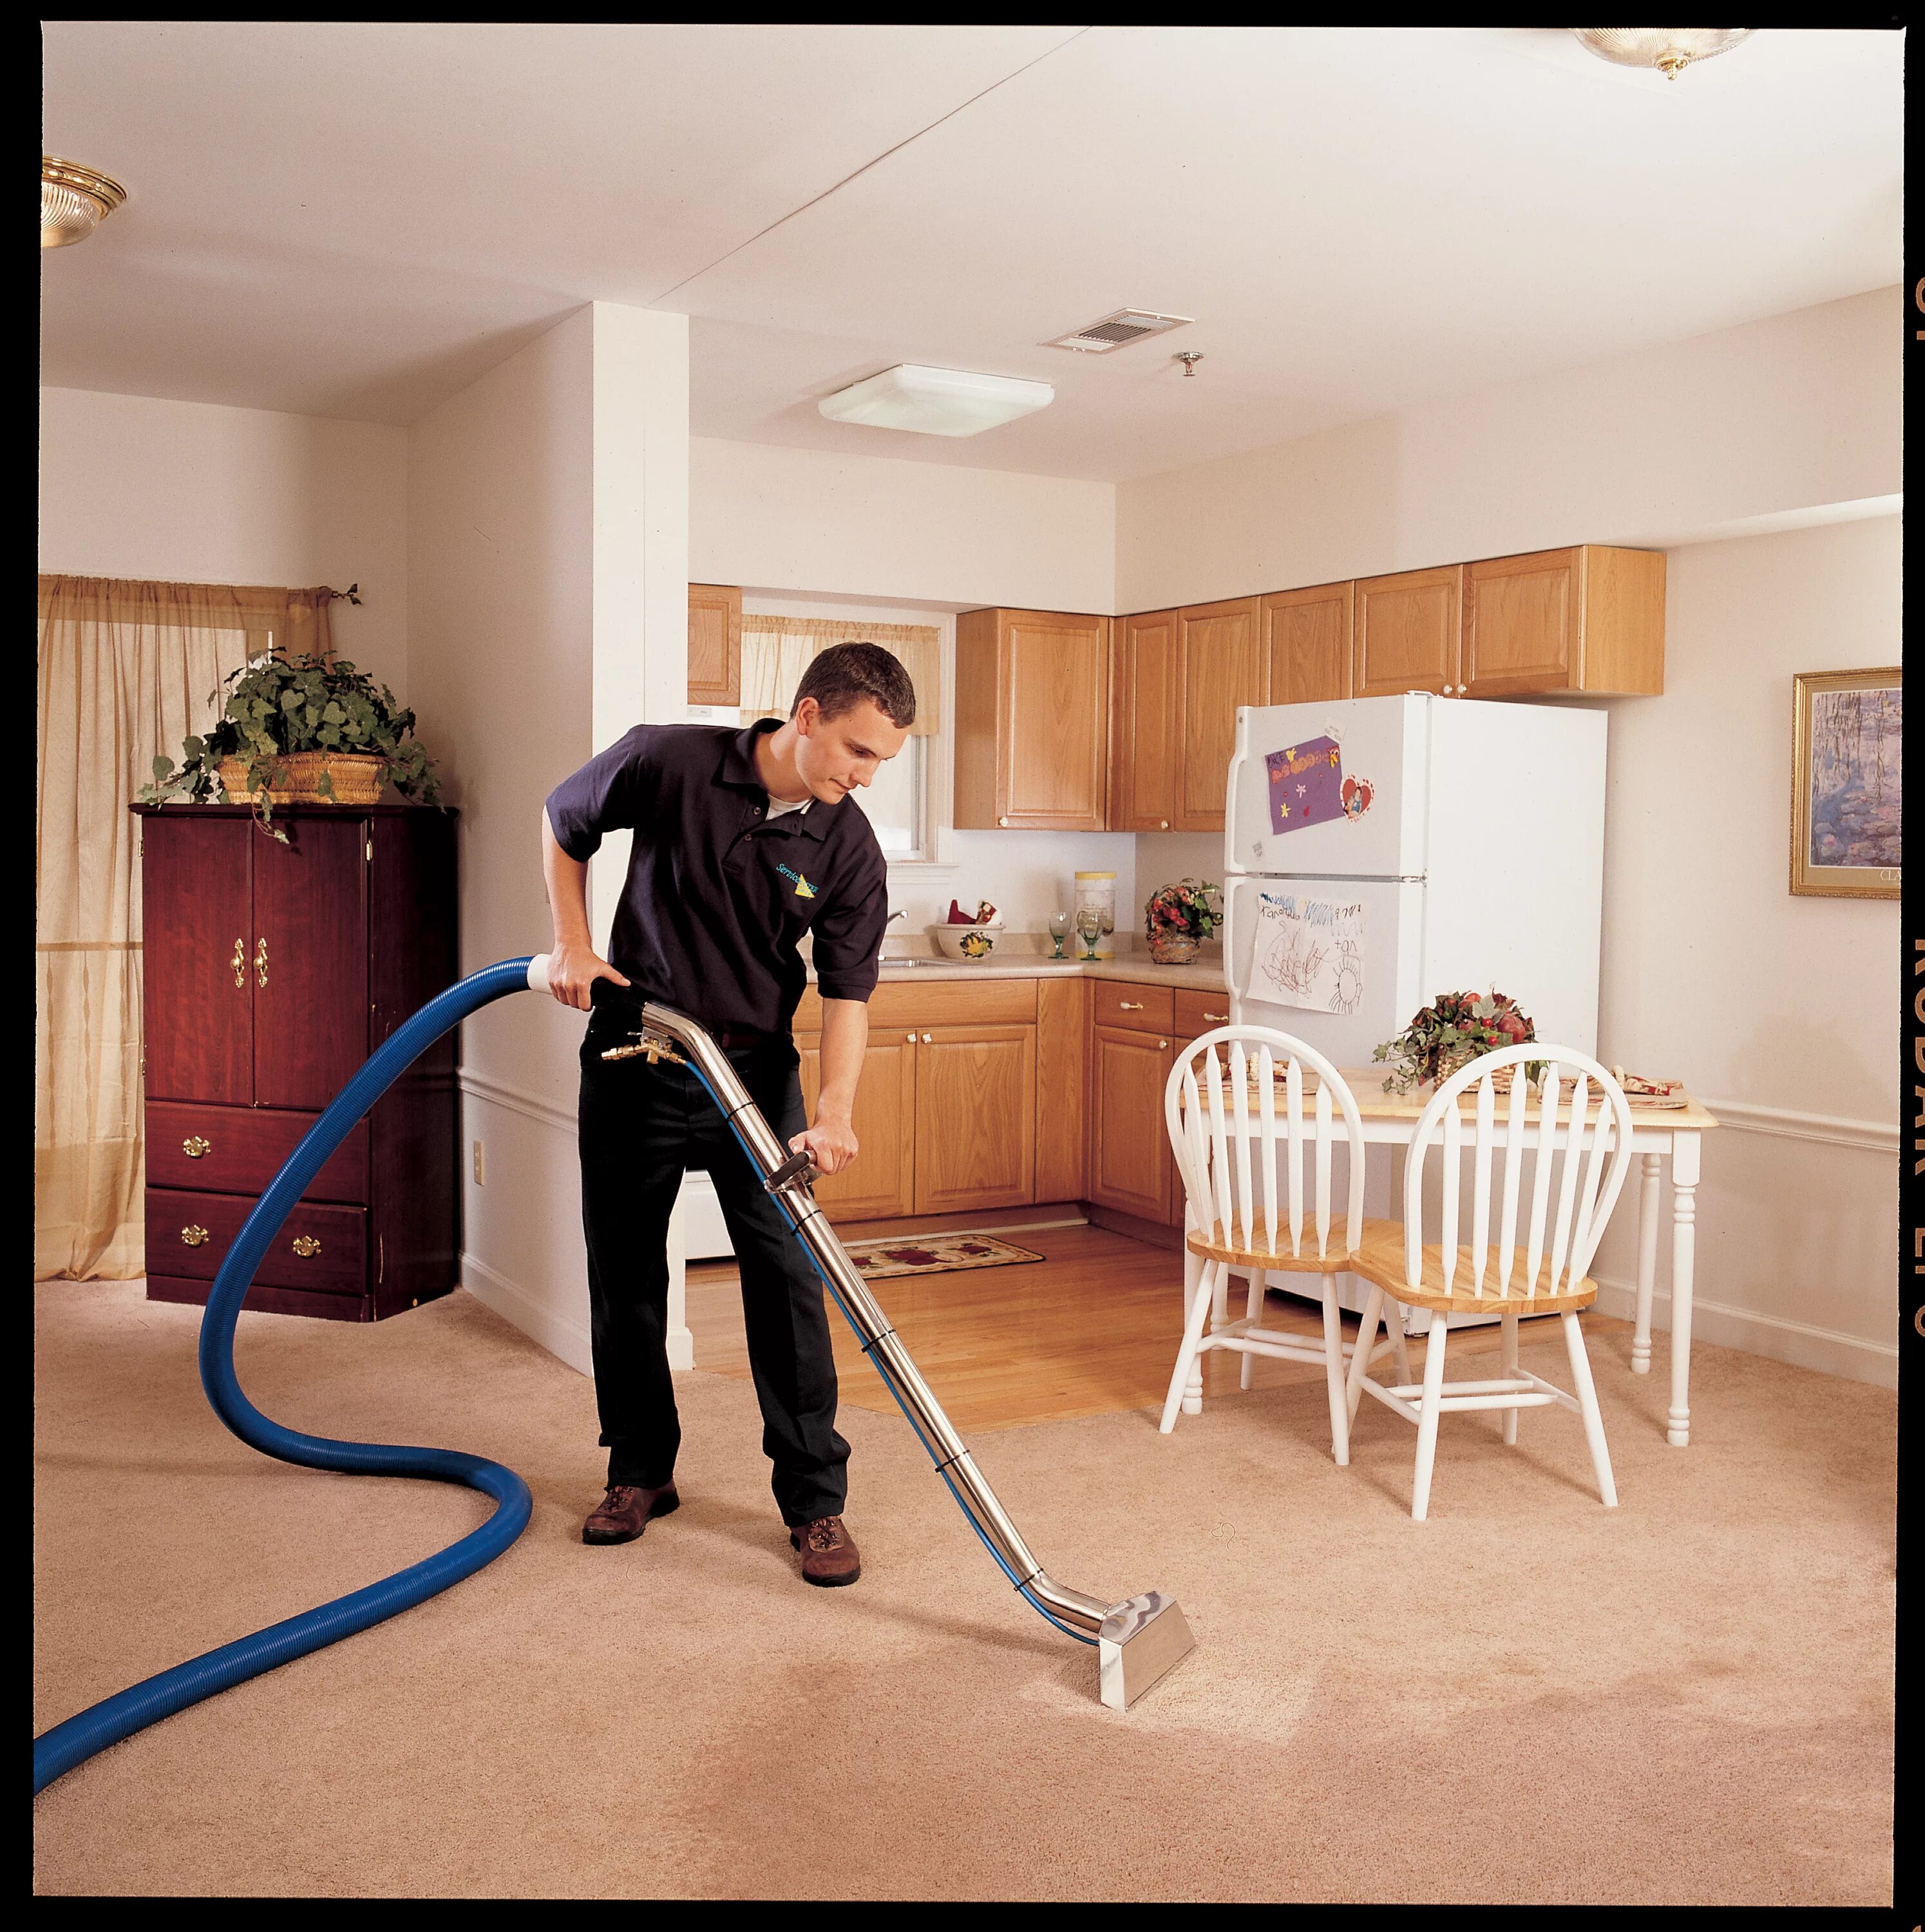 Чисто дома. Residential House Cleaning. Табуретка для уборки квартиры. Residential House Cleaning services.